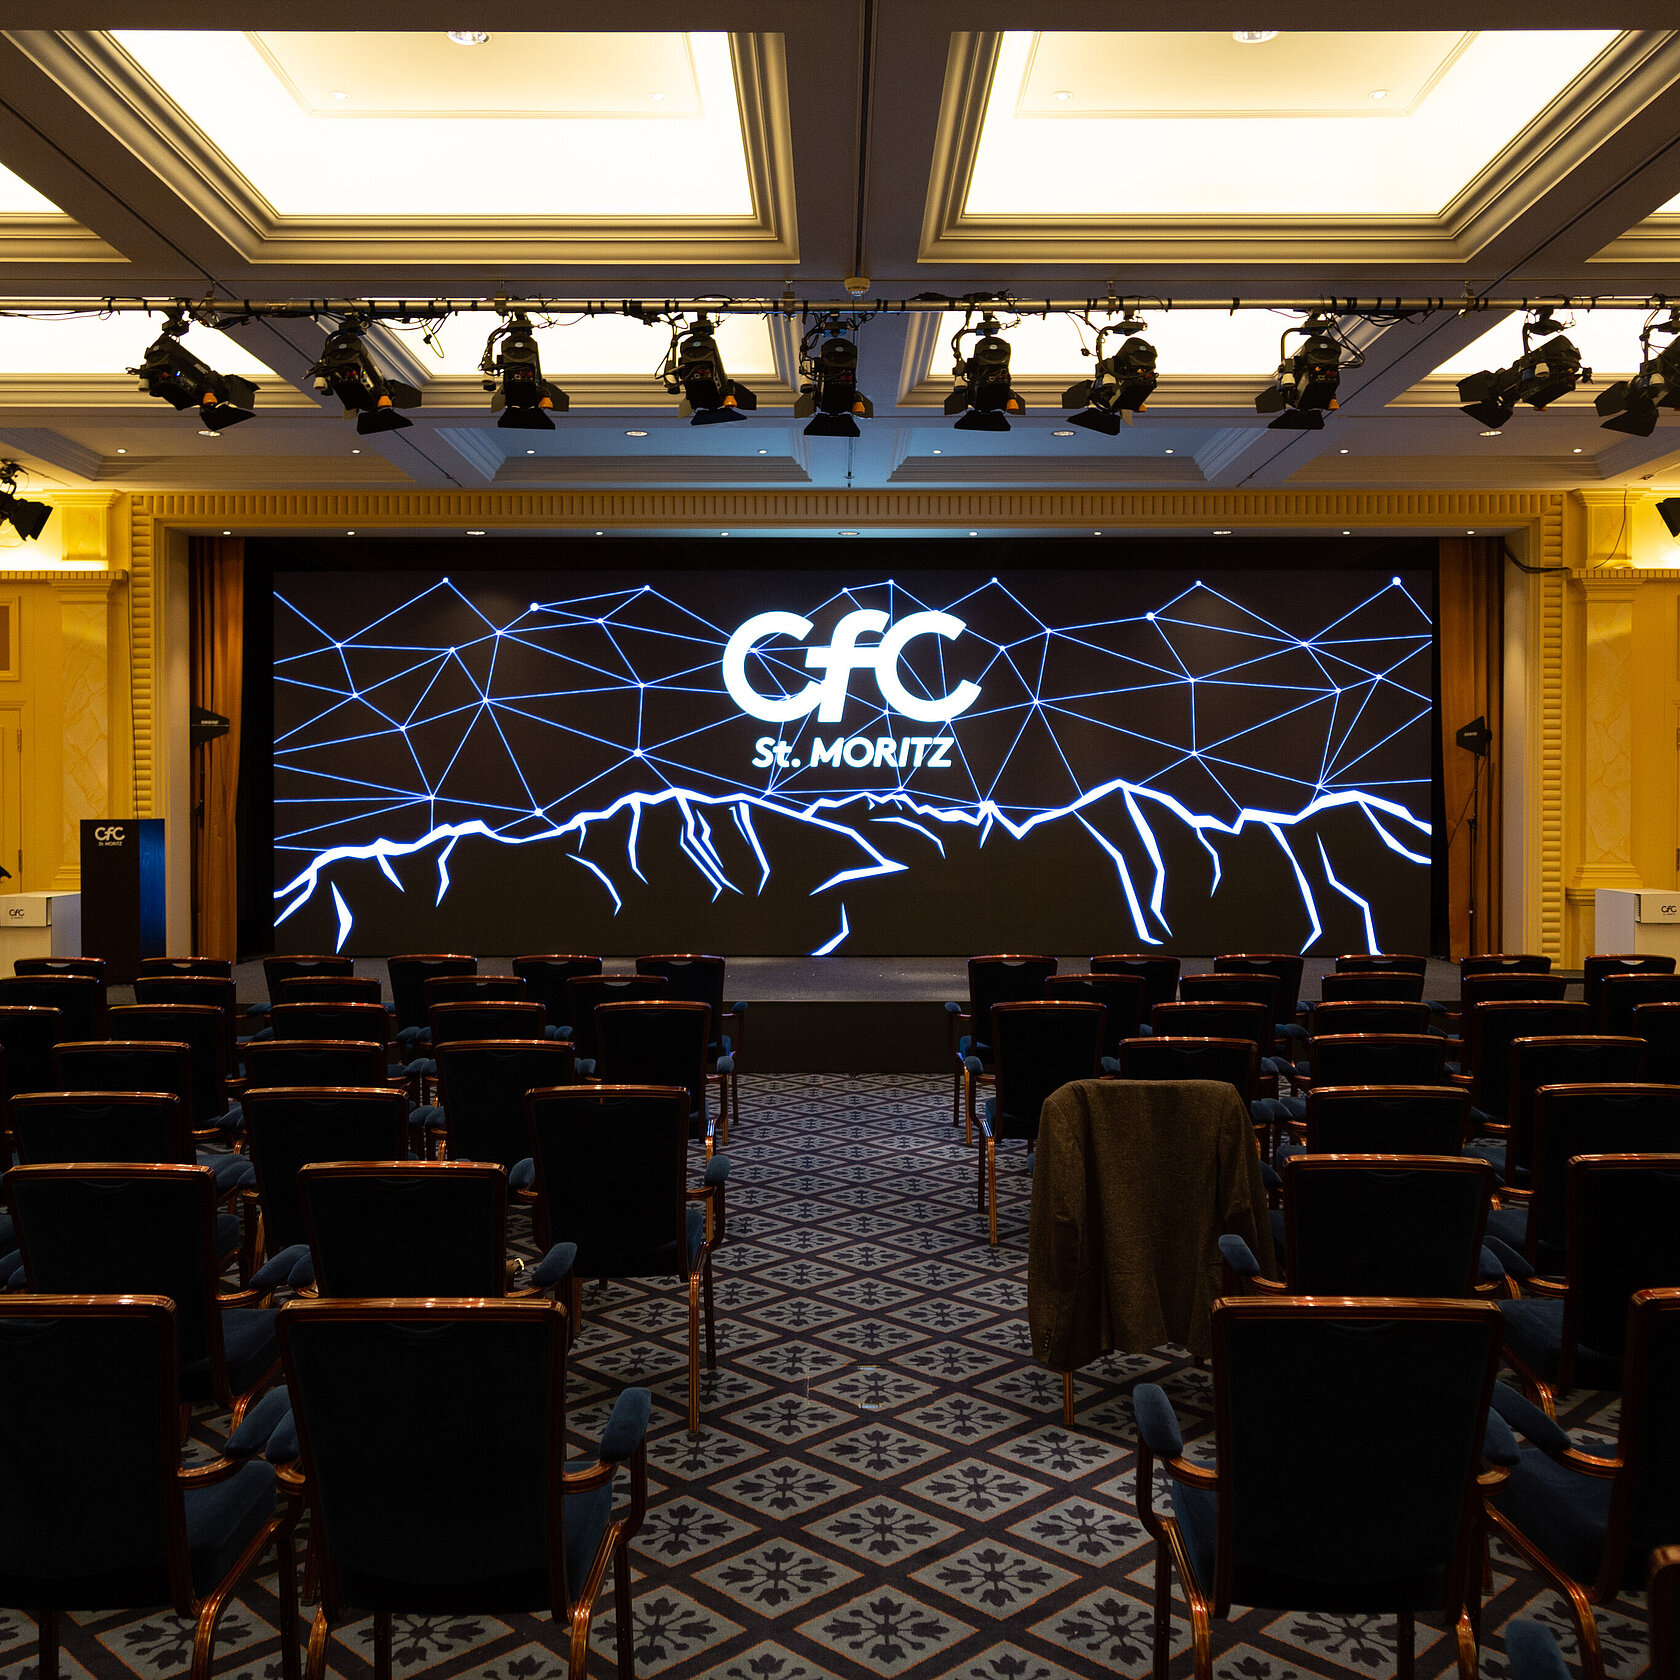  Crypto Finance Conference in St. Moritz. Planung und Realisation der gesamten Bühnentechnik inkl. Licht, Audio, Videozuspielung und LED Wand.